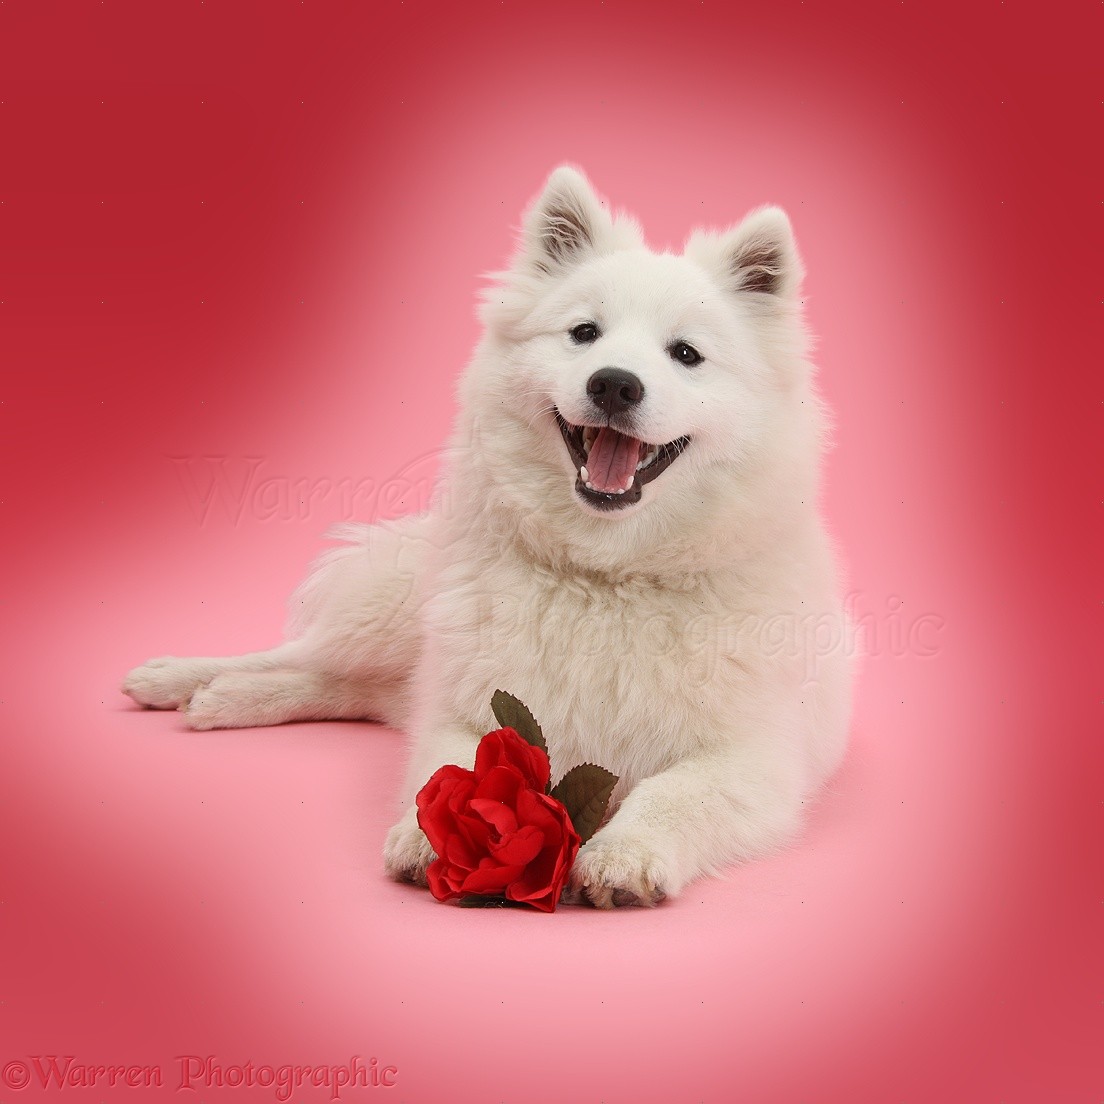 Dog Images, White Japanese Spitz Dog with Red Rose, WP39553.